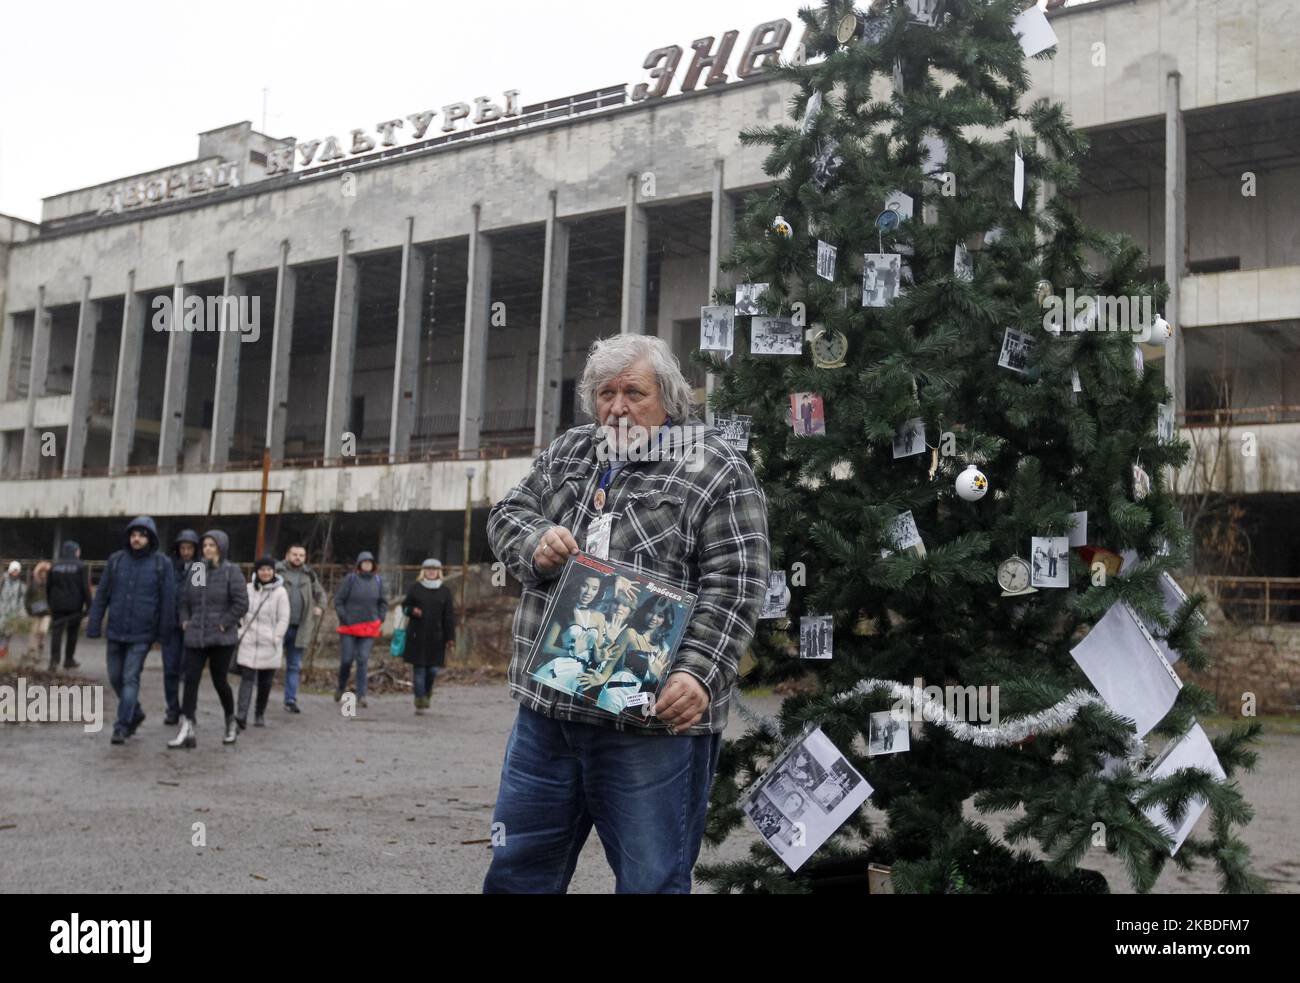 Un ancien résident de Pripyat montre ses assiettes préférées placées sur un arbre de Noël, sur une place principale de la ville de Pripyat, aujourd'hui abandonnée, à Tchernobyl, en Ukraine, le 25 décembre 2019. Les anciens habitants de Pripyat sont venus dans leur ville pour la première fois pour décorer avec leurs photos de famille un arbre de Noël, 33 ans après qu'ils ont quitté la ville après la catastrophe de Tchernobyl. Le dernier arbre de Noël a été installé à Pripyat le 1985 décembre. La catastrophe de Tchernobyl sur la centrale nucléaire de Tchernobyl s'est produite à 26 avril 1986. (Photo par STR/NurPhoto) Banque D'Images